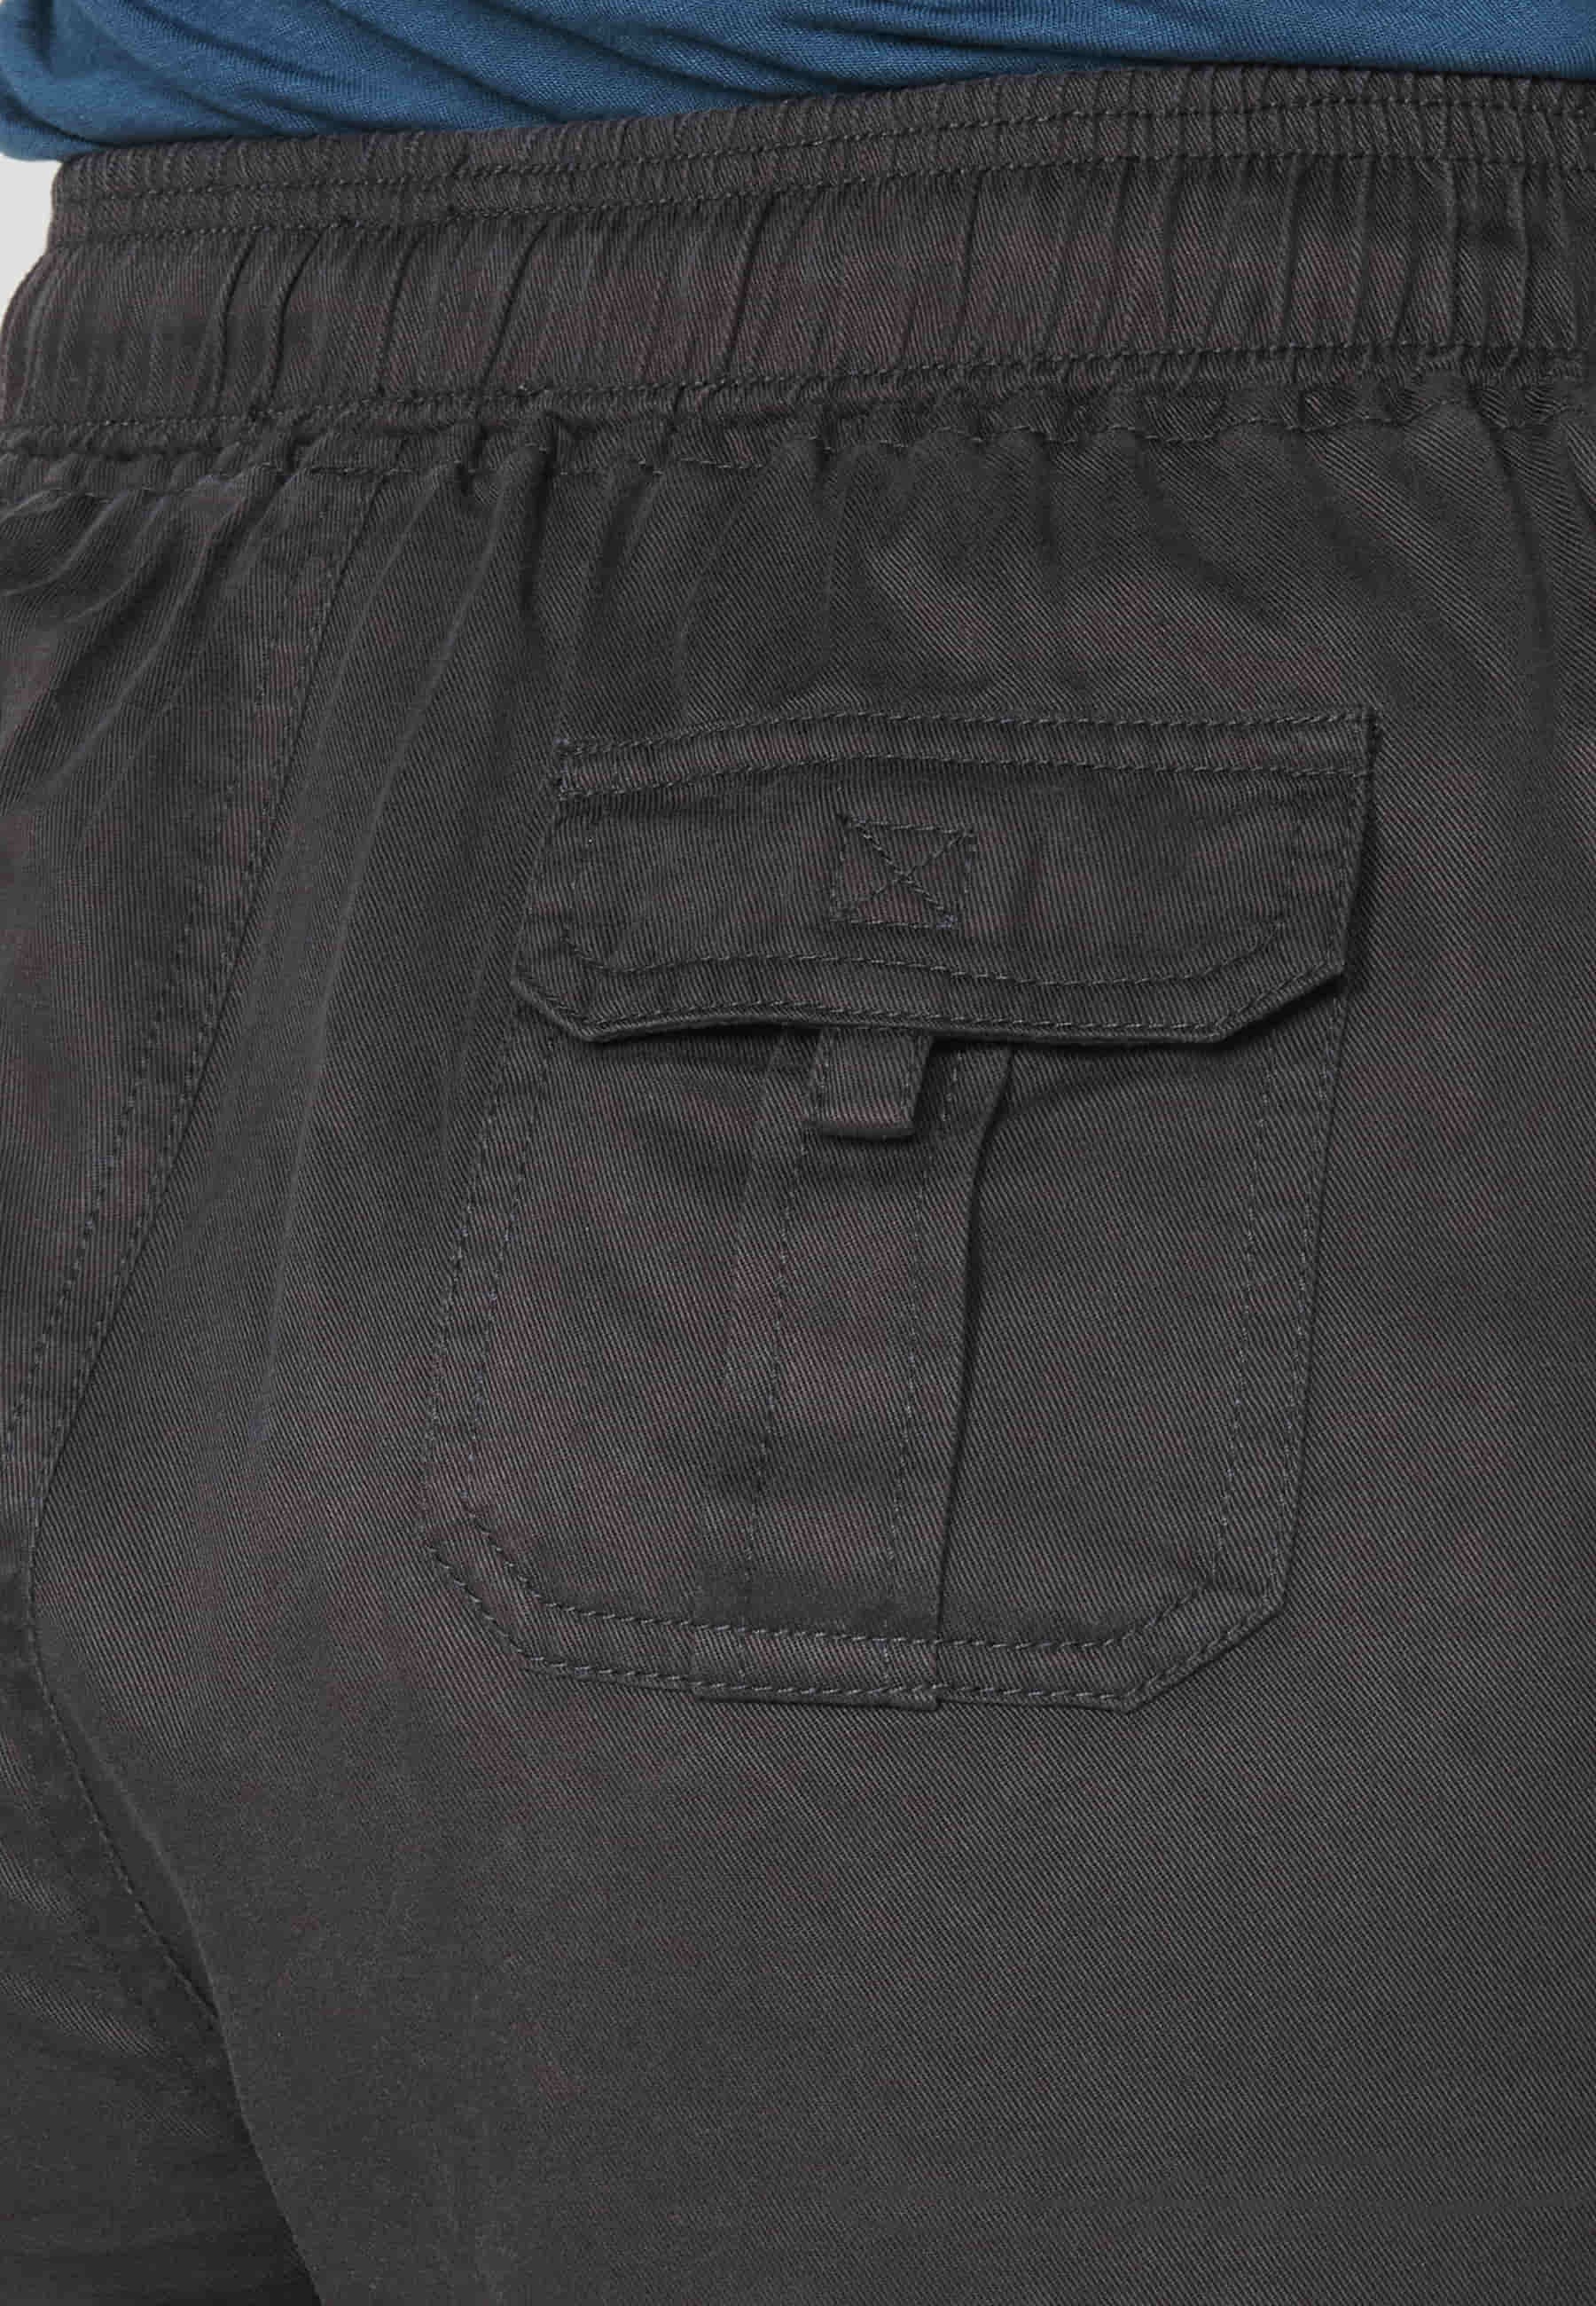 Pantalons curts Short amb cintura de goma ajustable color Negre per a Dona